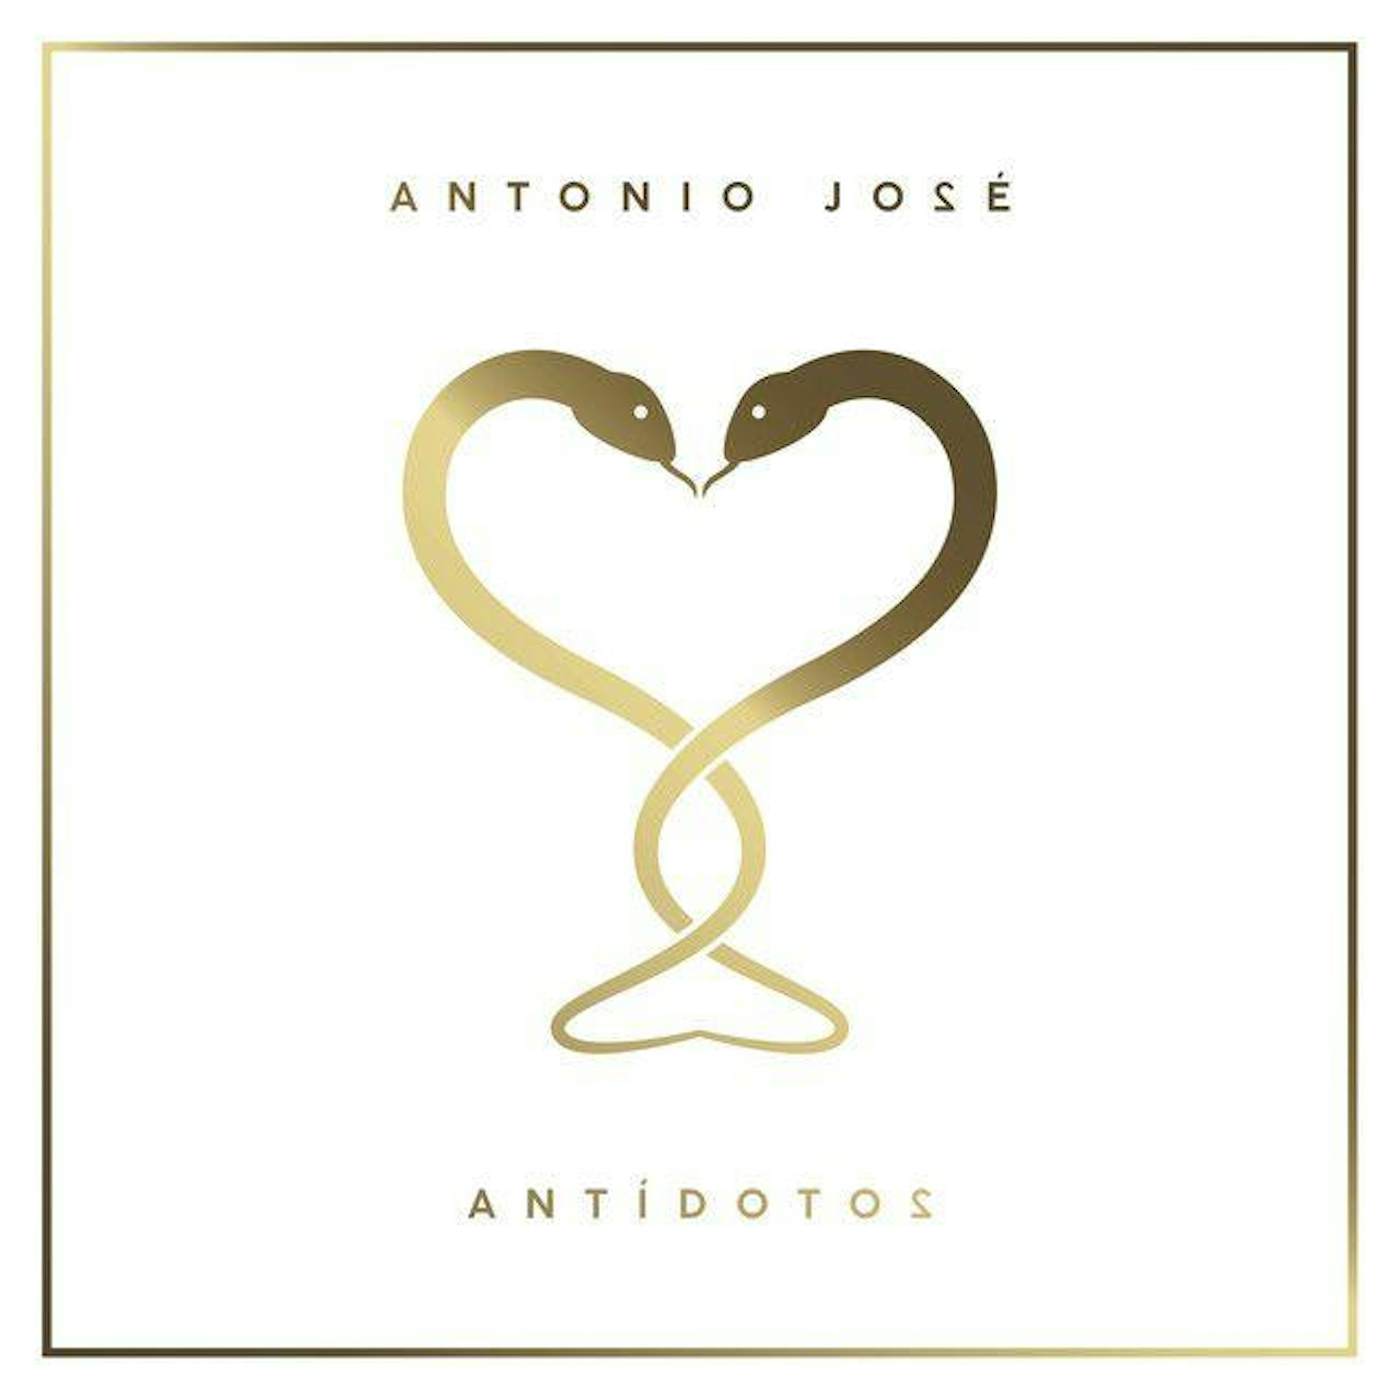 Antonio José ANTIDOTO2 CD